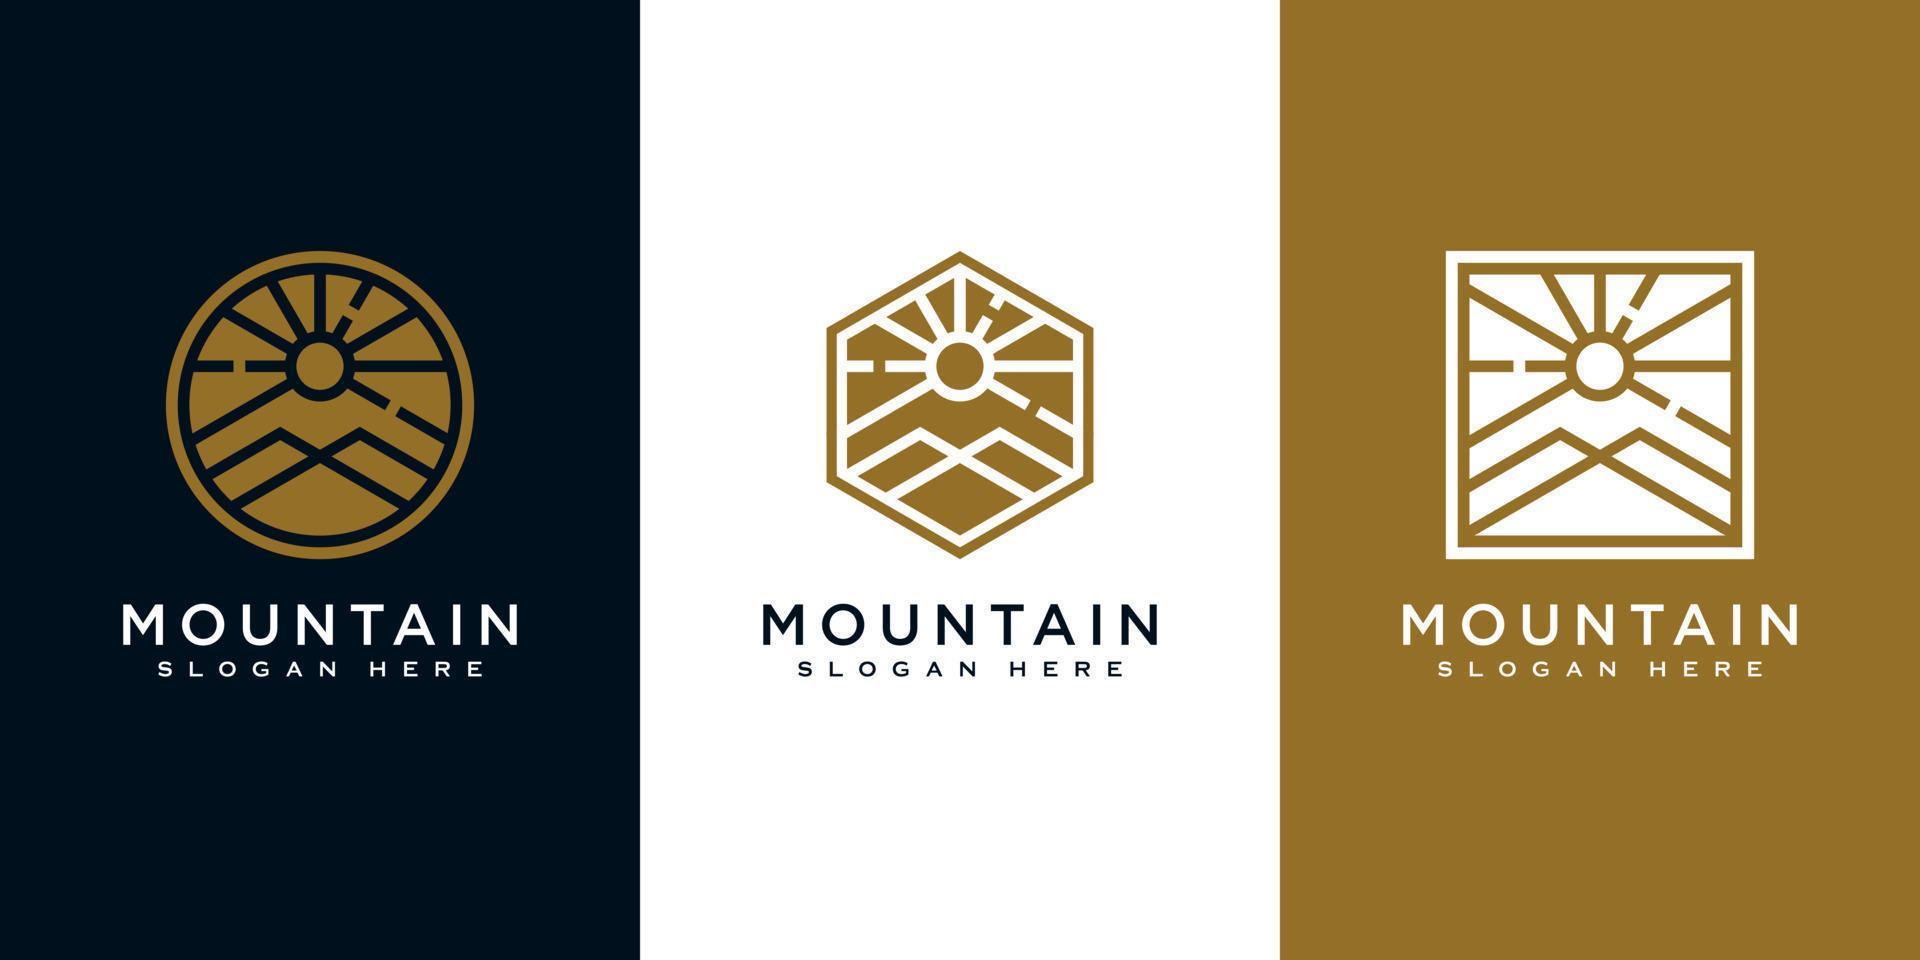 Set von Bergen mit Sonnenlicht-Logo-Design vektor